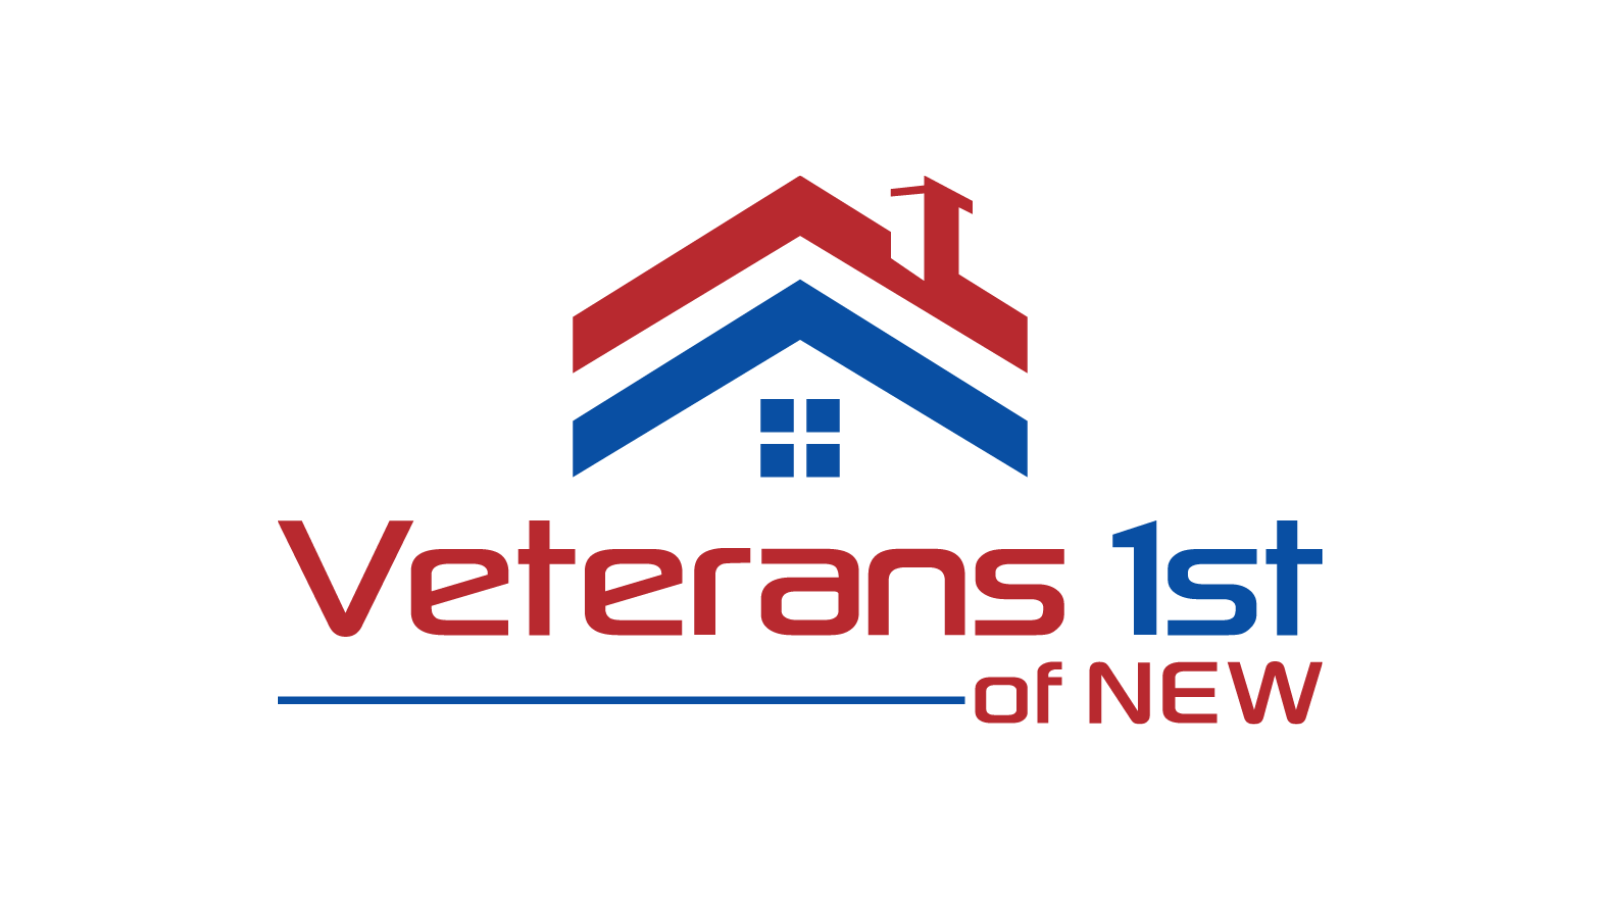 Veterans’ housing in Green Bay nears approval